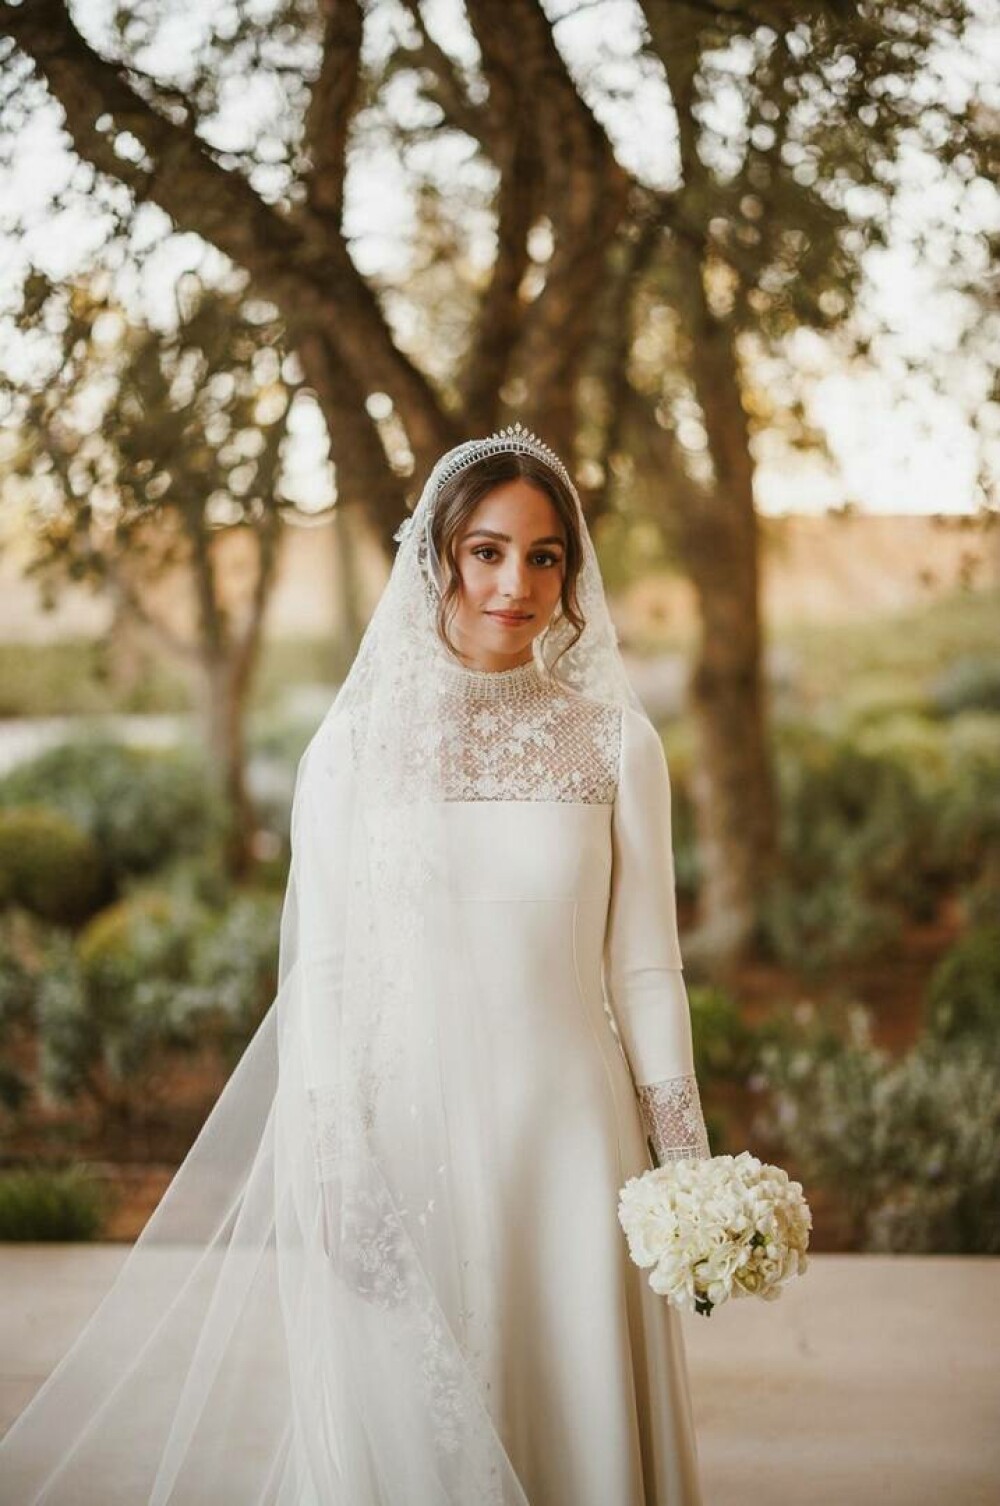 Prințesa Iman a Iordaniei s-a căsătorit cu un finanțist de origine greacă. Imaginile sunt spectaculoase GALERIE FOTO & VIDEO - Imaginea 9